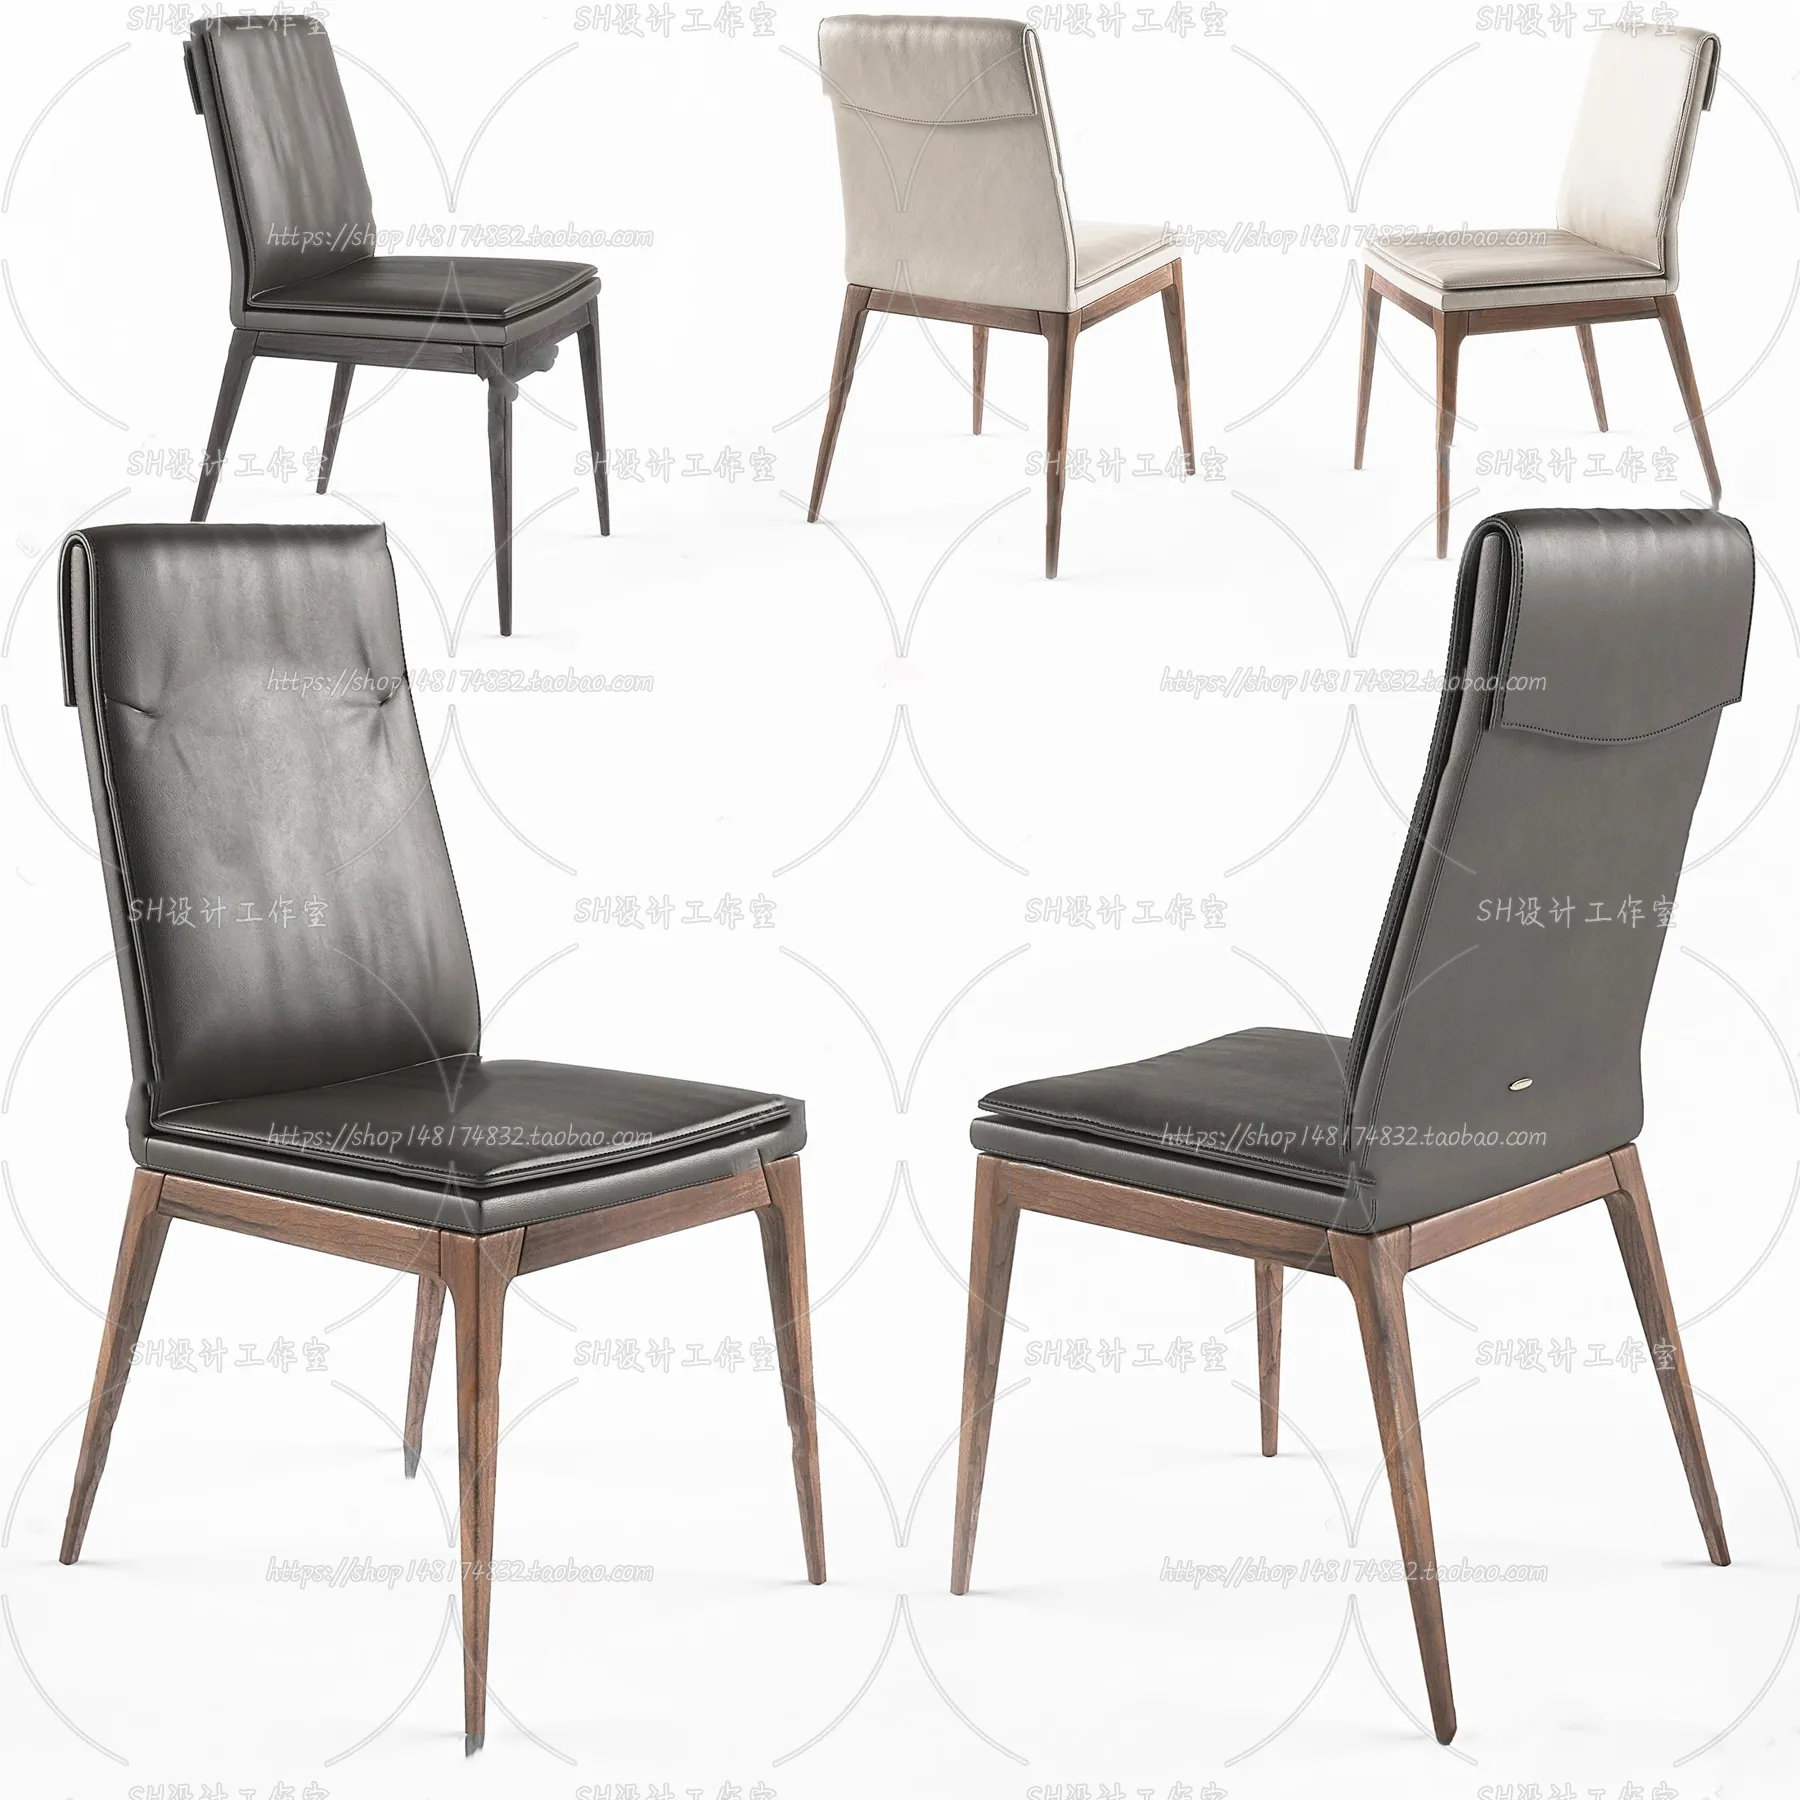 Chair – Single Chair 3D Models – 2030